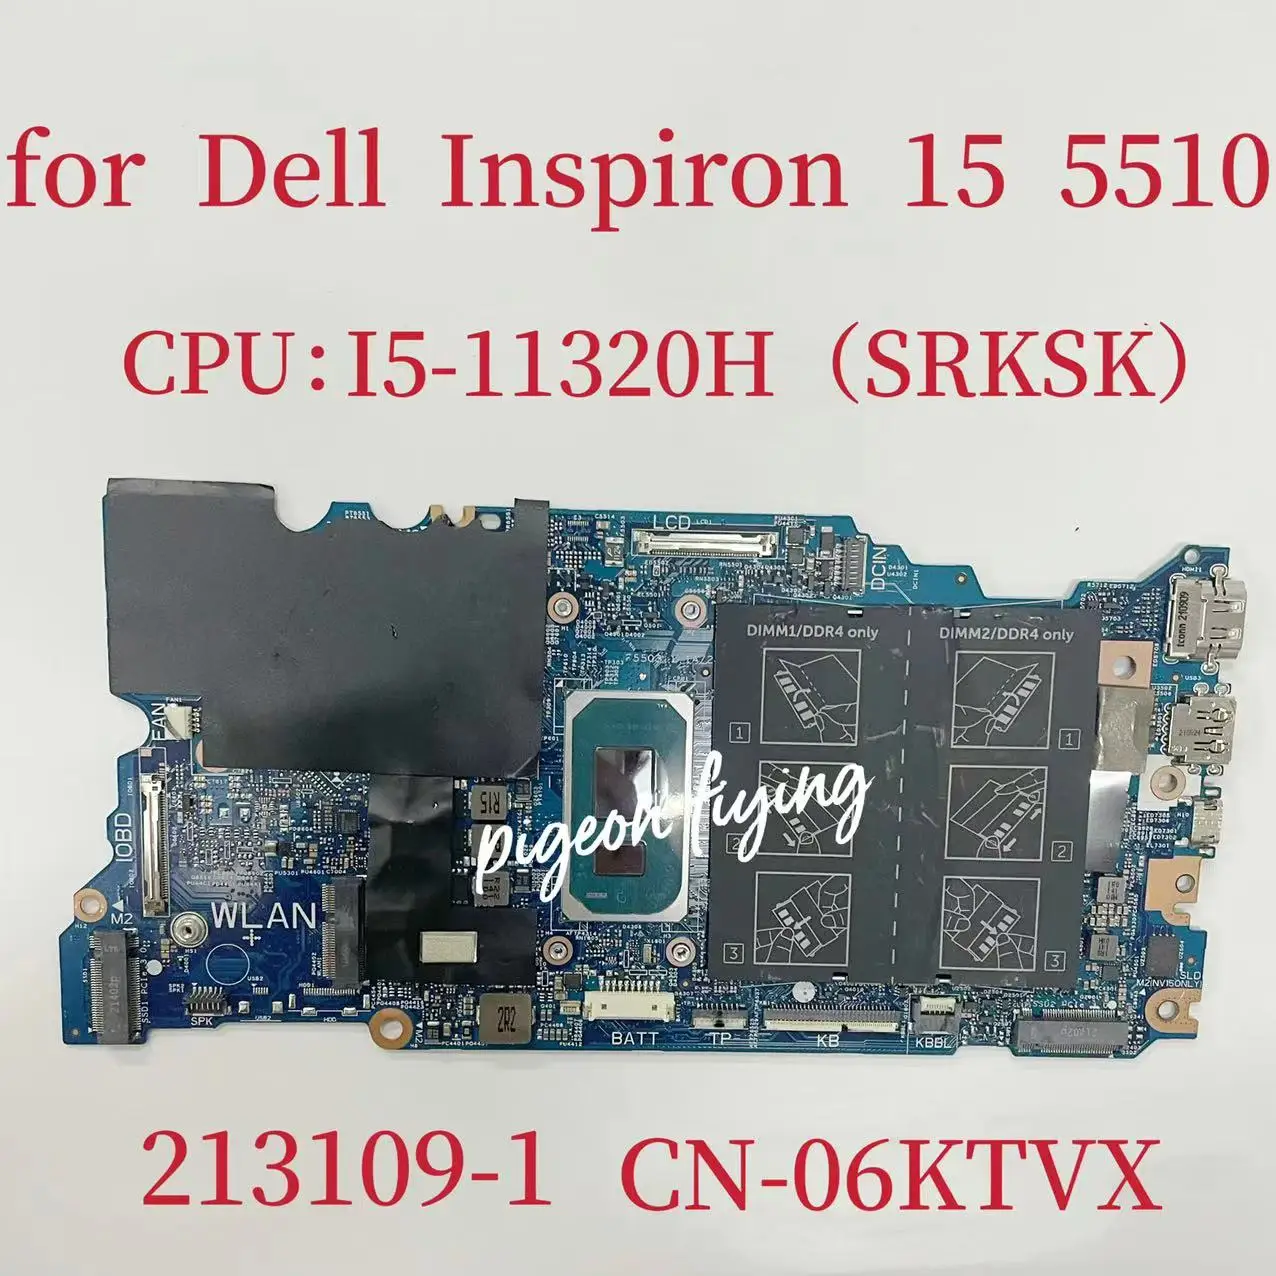 

213109-1 Mainboard For Dell Latitude 15 5510 Laptop Motherboard CPU: I5-11320H SRKSK DDR4 CN-06KTVX 06KTVX 6KTVX 100% Test OK